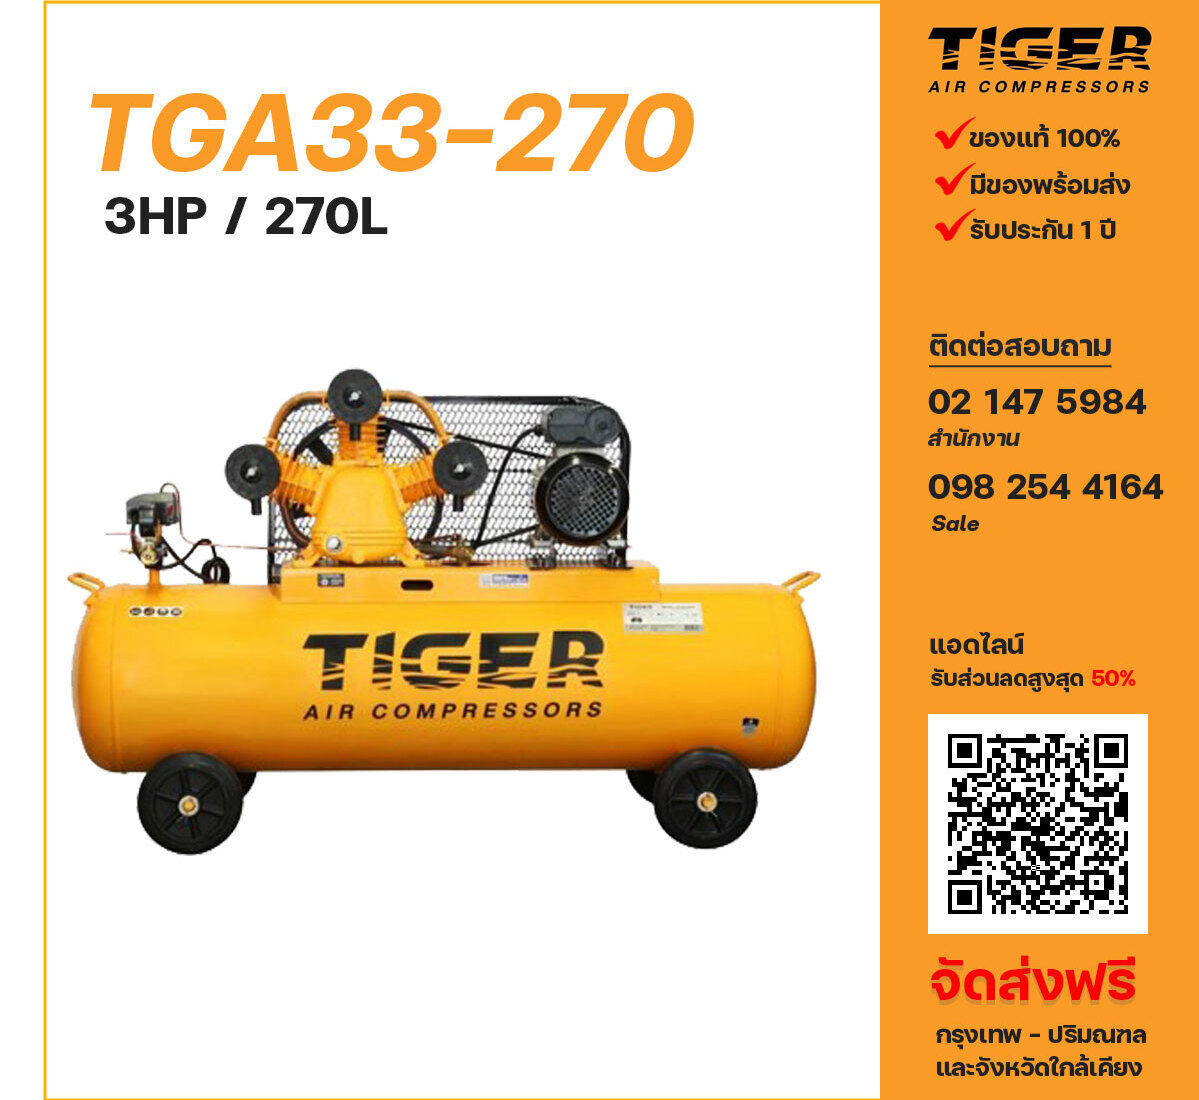 ปั๊มลมไทเกอร์ TIGER TGA33-270 220V ปั๊มลมลูกสูบ ขนาด 3 สูบ 3 แรงม้า 270 ลิตร TIGER พร้อมมอเตอร์ ไฟ 220V ส่งฟรี กรุงเทพฯ-ปริมณฑล รับประกัน 1 ปี